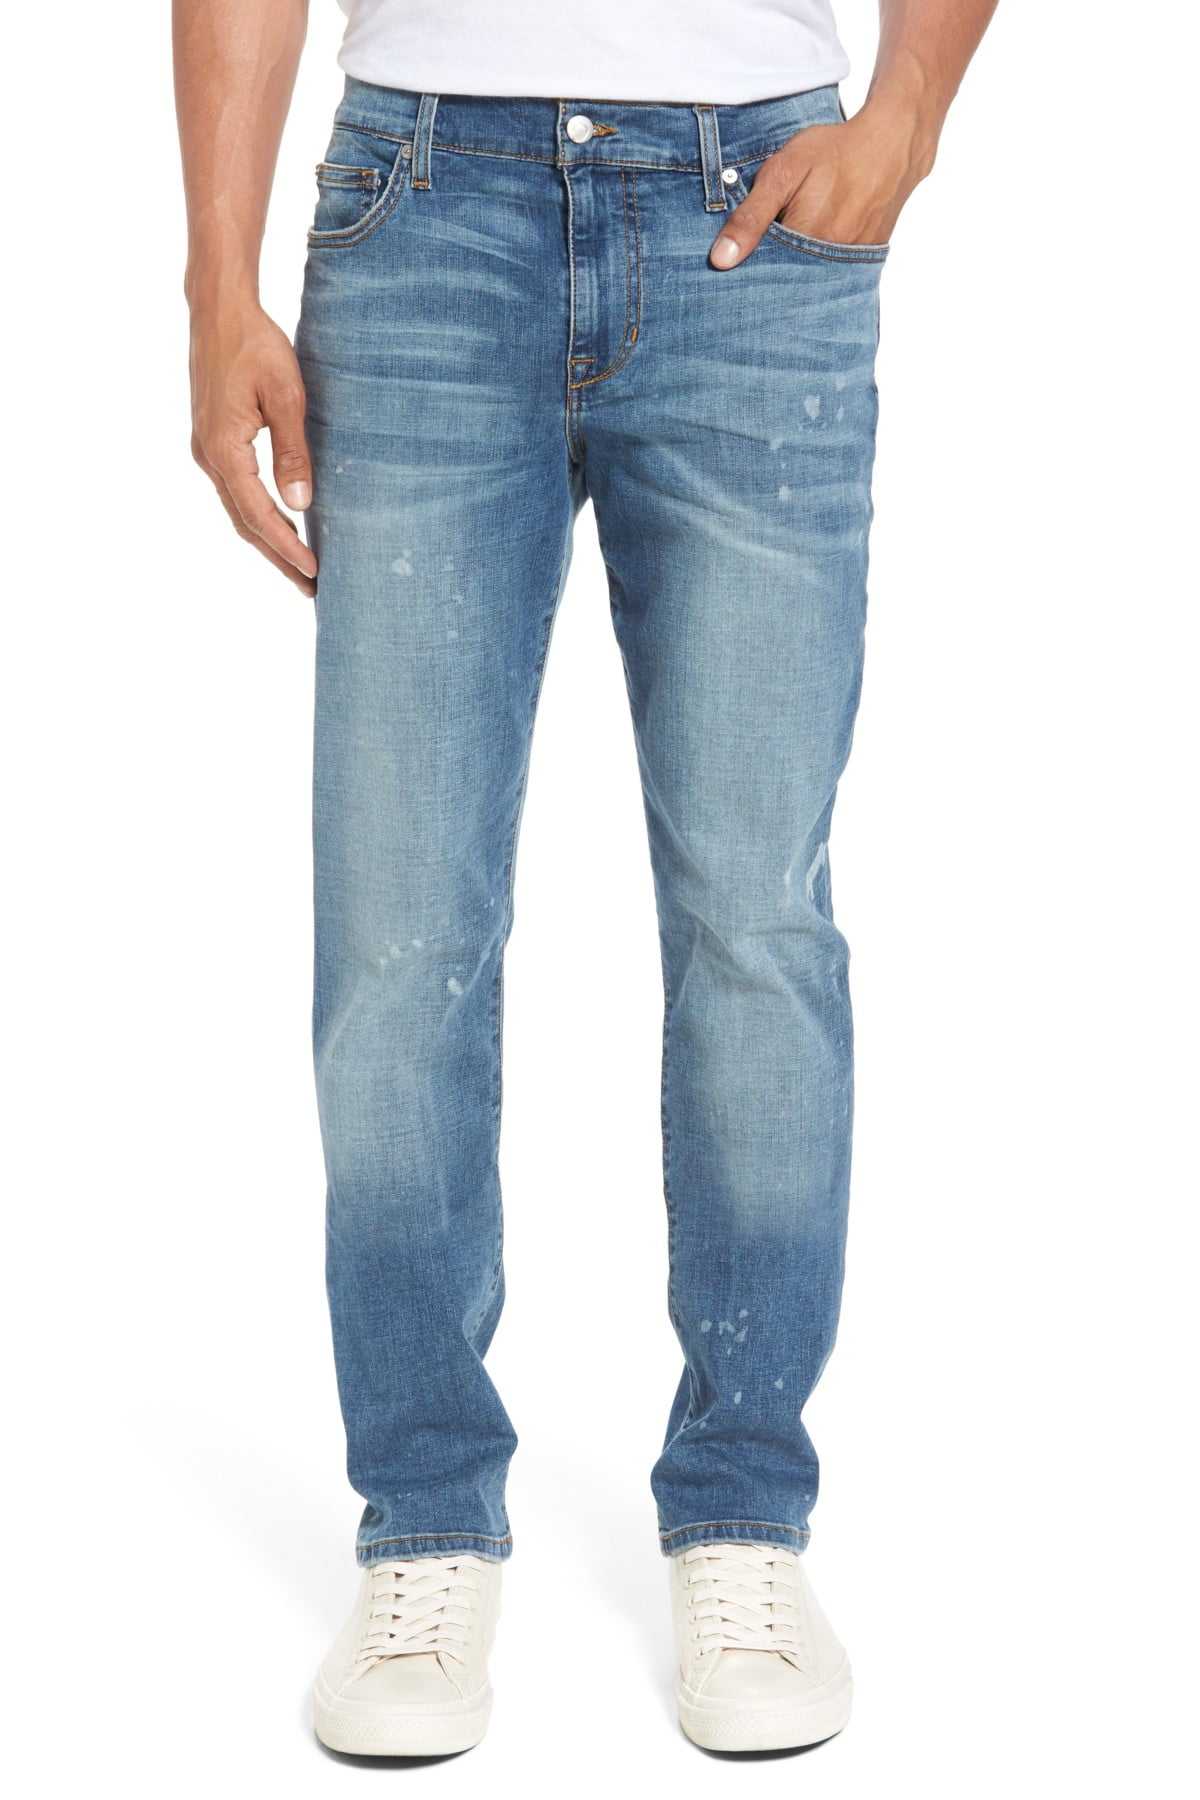 JOE'S Jeans - Mens Jeans 33X35 Mid-Rise Slim Fit Stretch 33 - Walmart ...